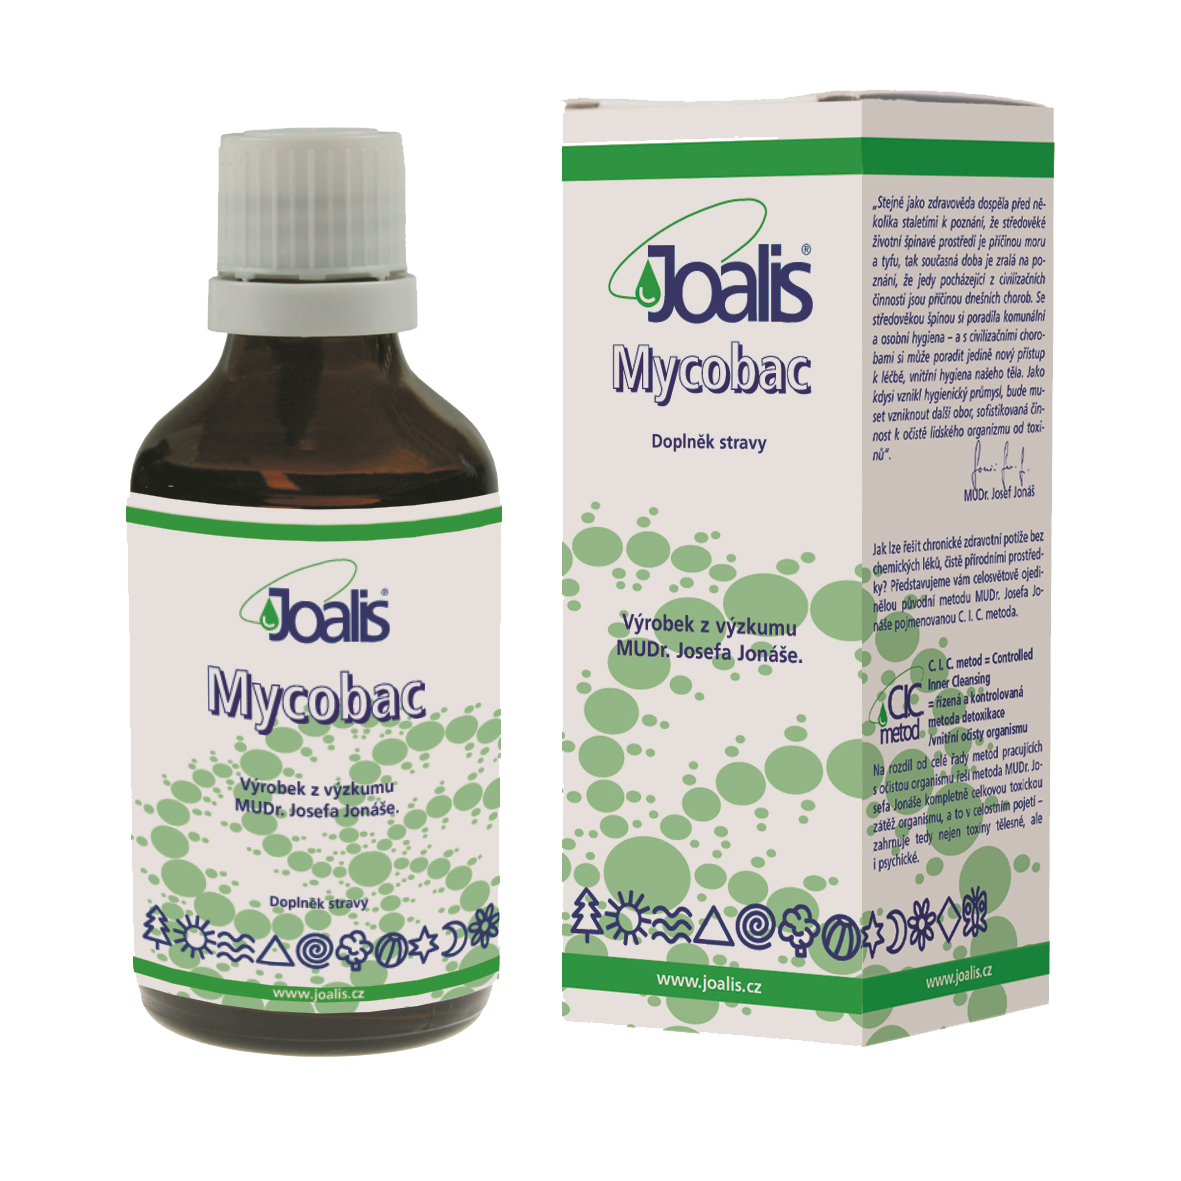 Joalis Mycobac (mycobakterie)